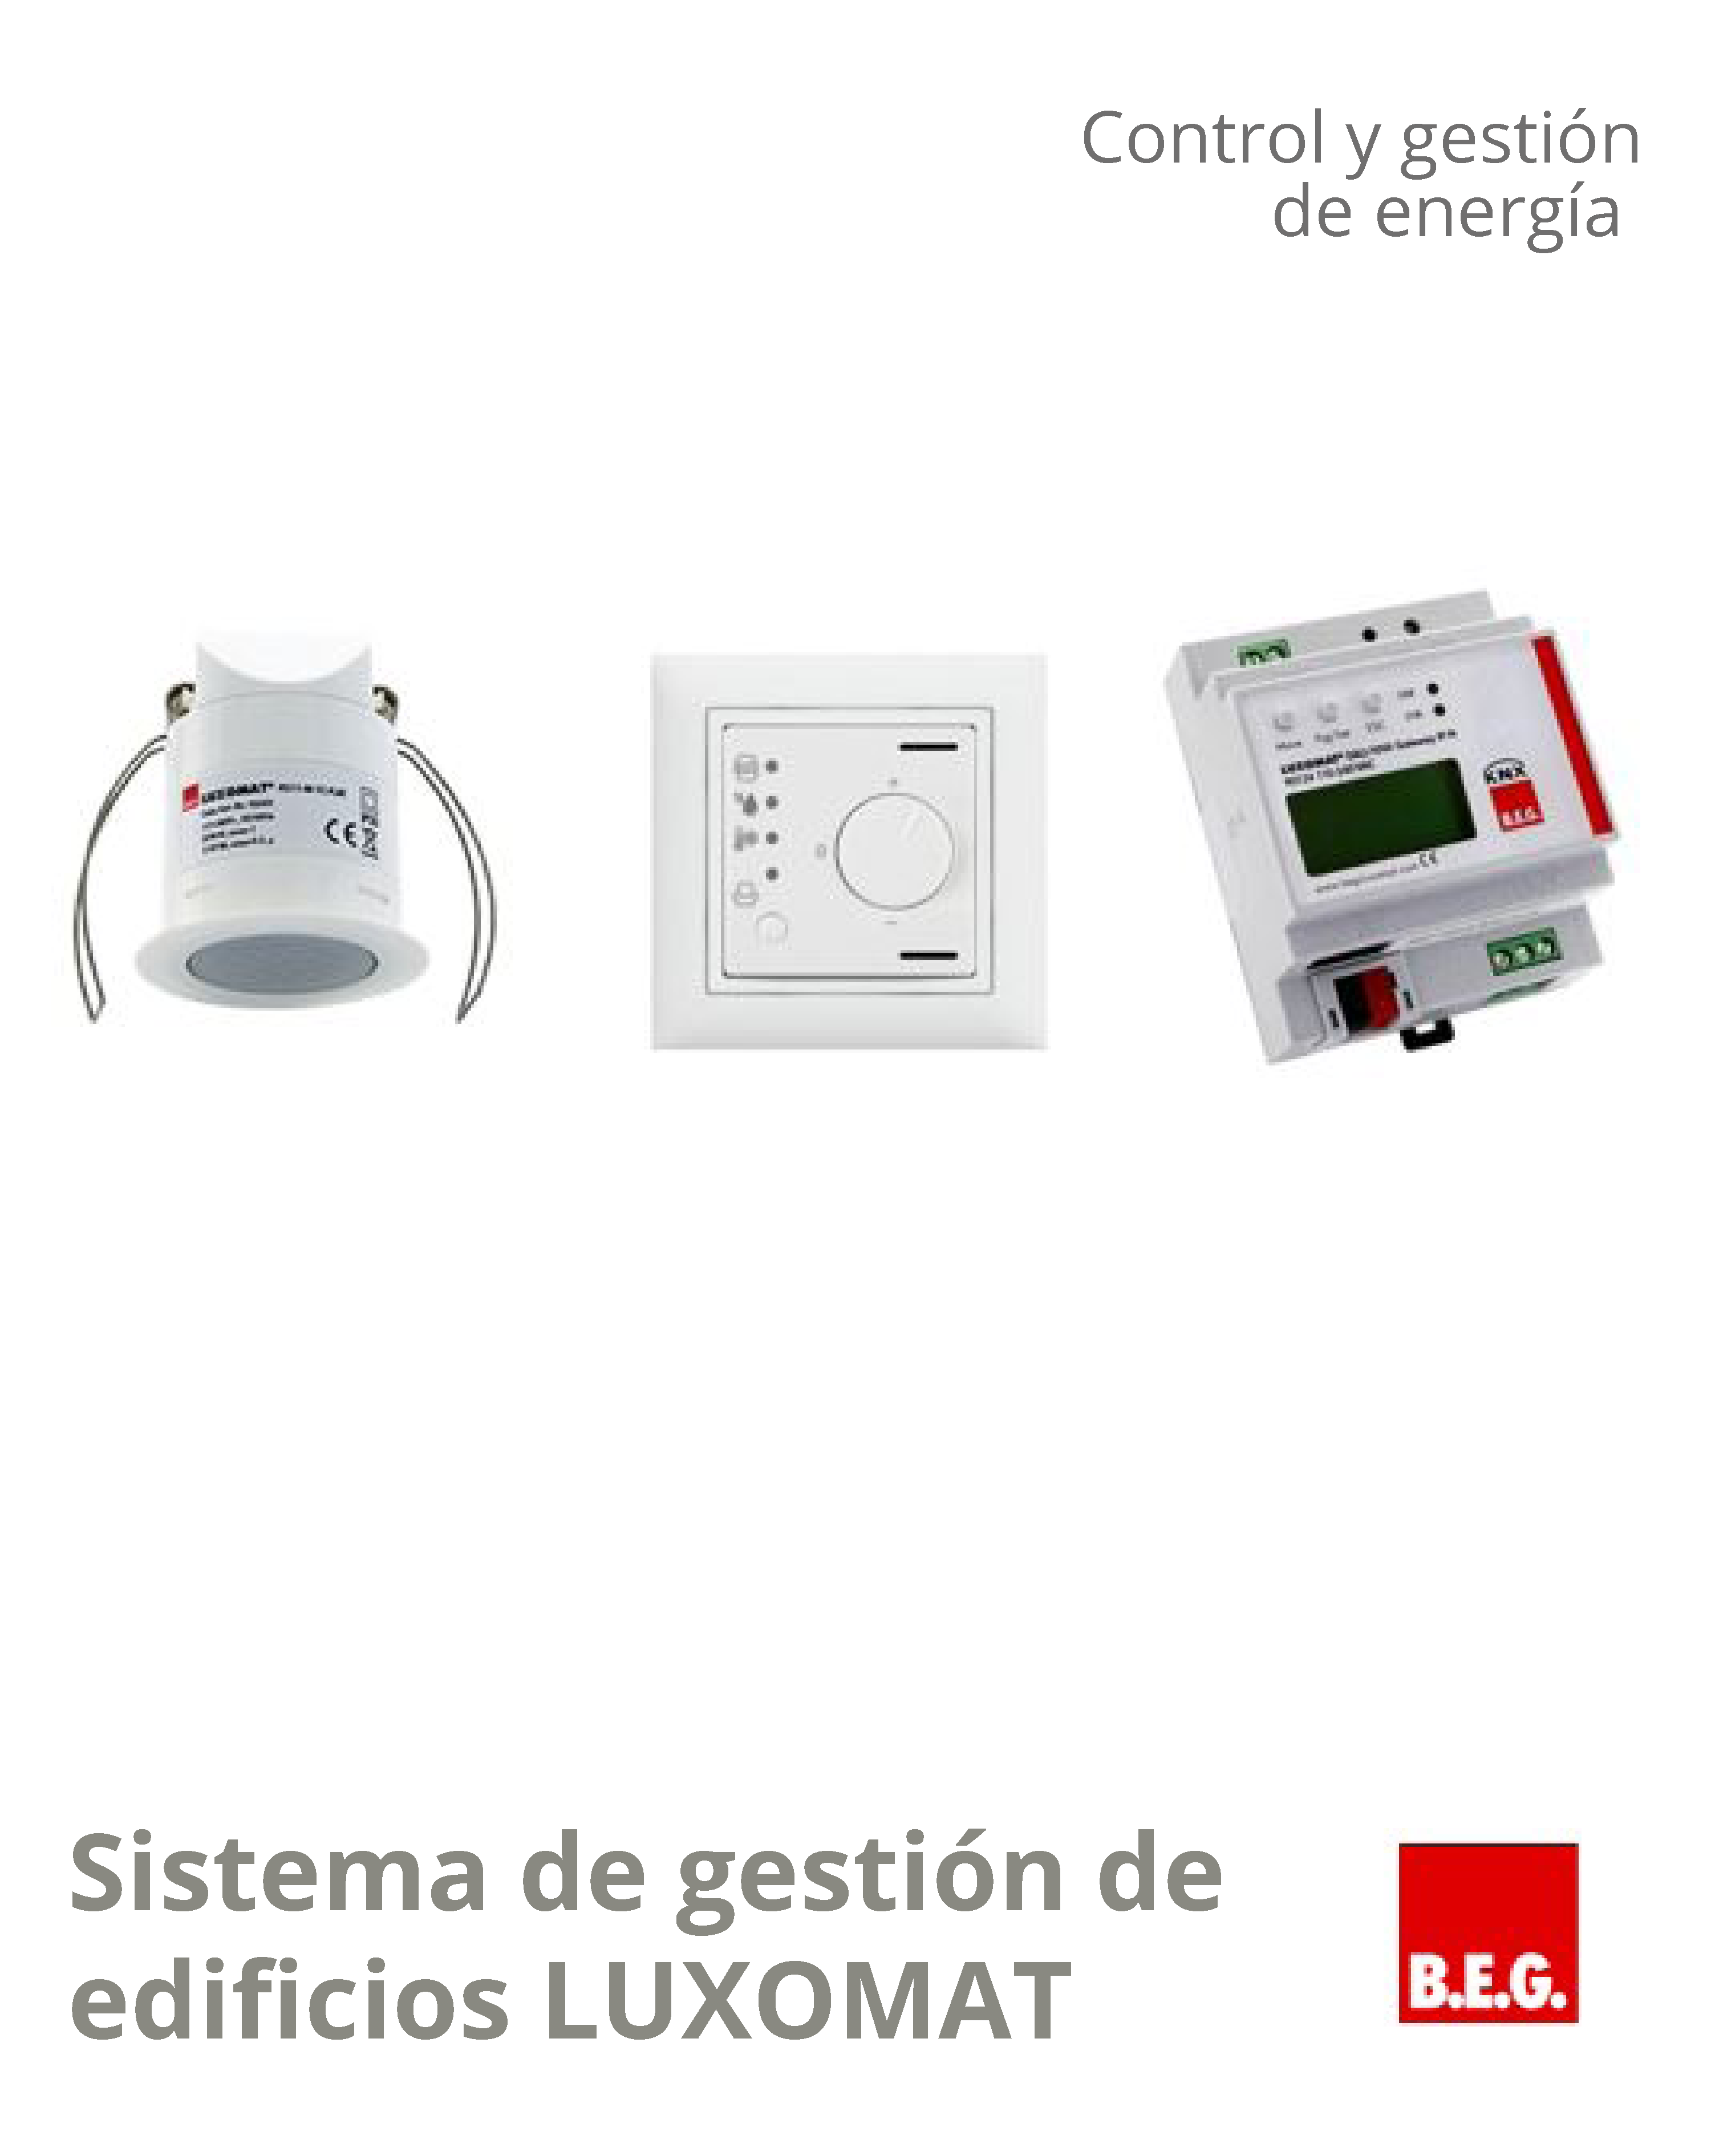 Sistema de gestión LUXOMATnet de B.E.G. Hispania